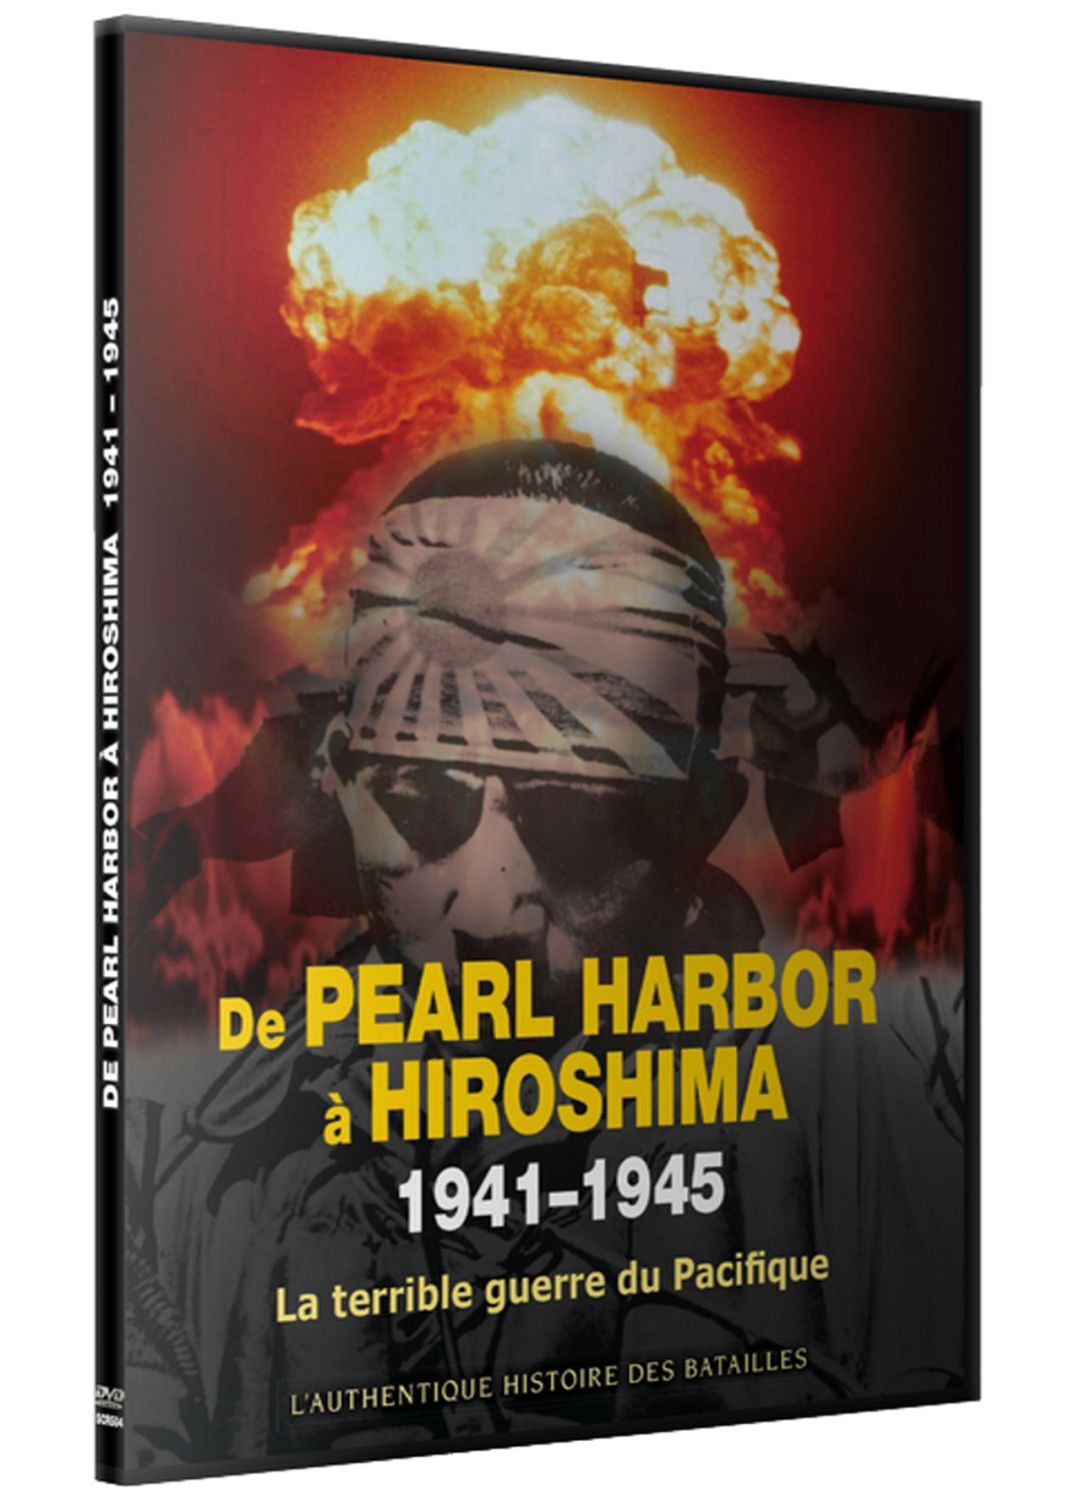 De Pearl Harbor à Hiroshima [DVD]